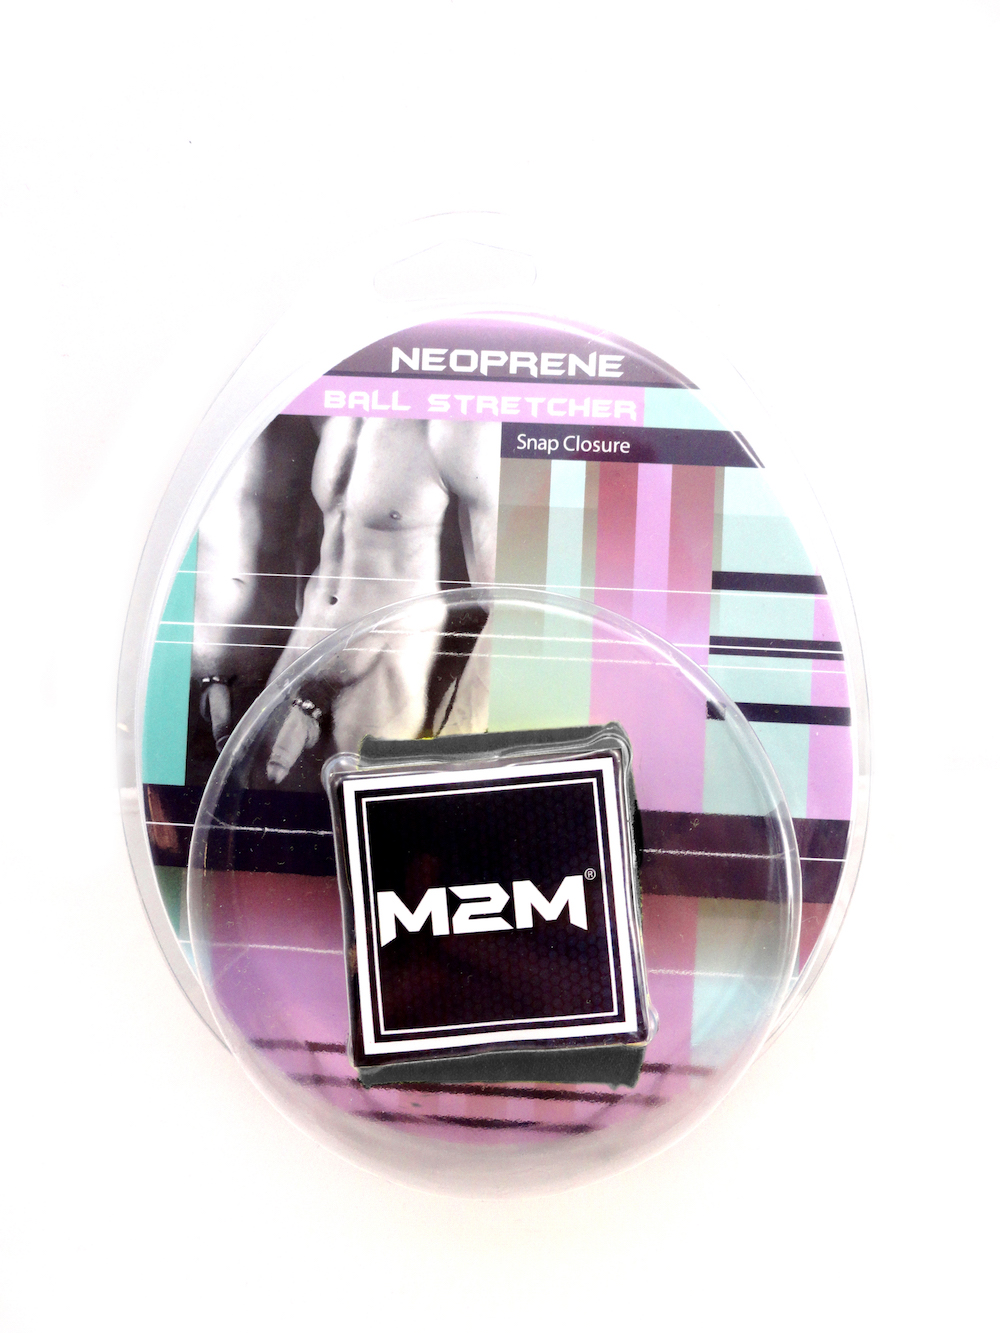 M2M NEOPRENE BALL STRETCHER 1.5 INCH - GREY